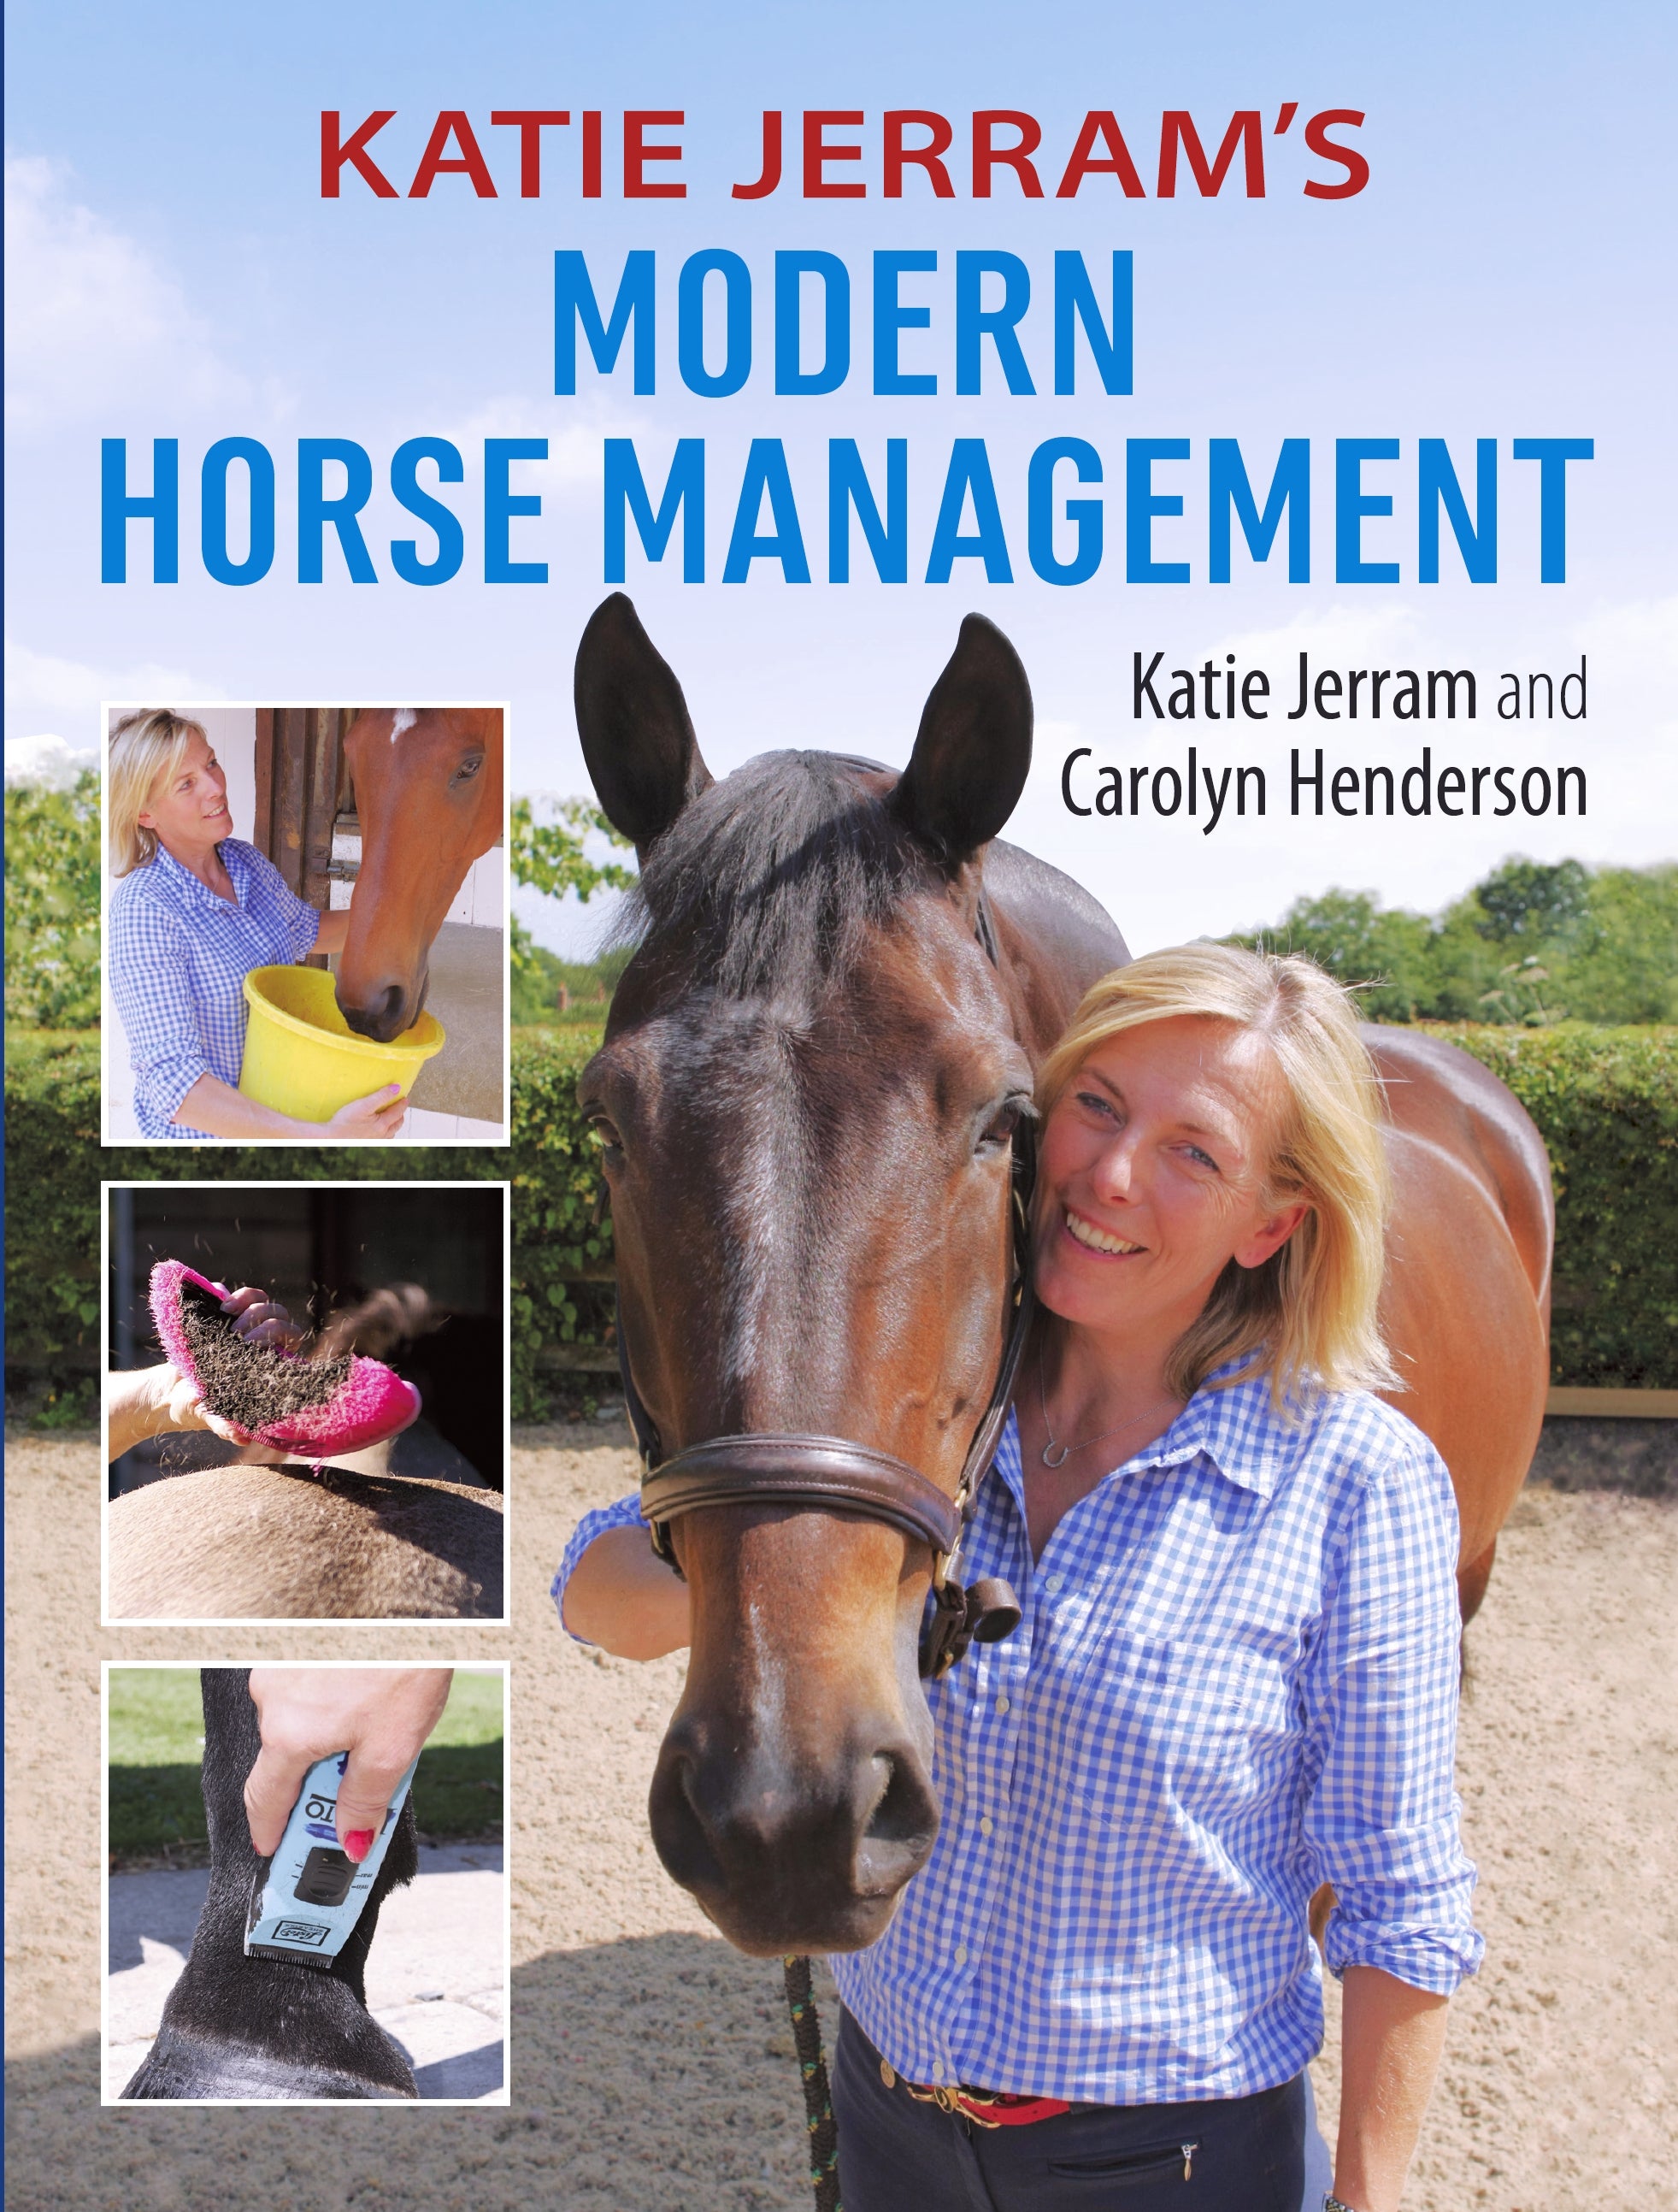 Katie Jerram's Modern Horse Management